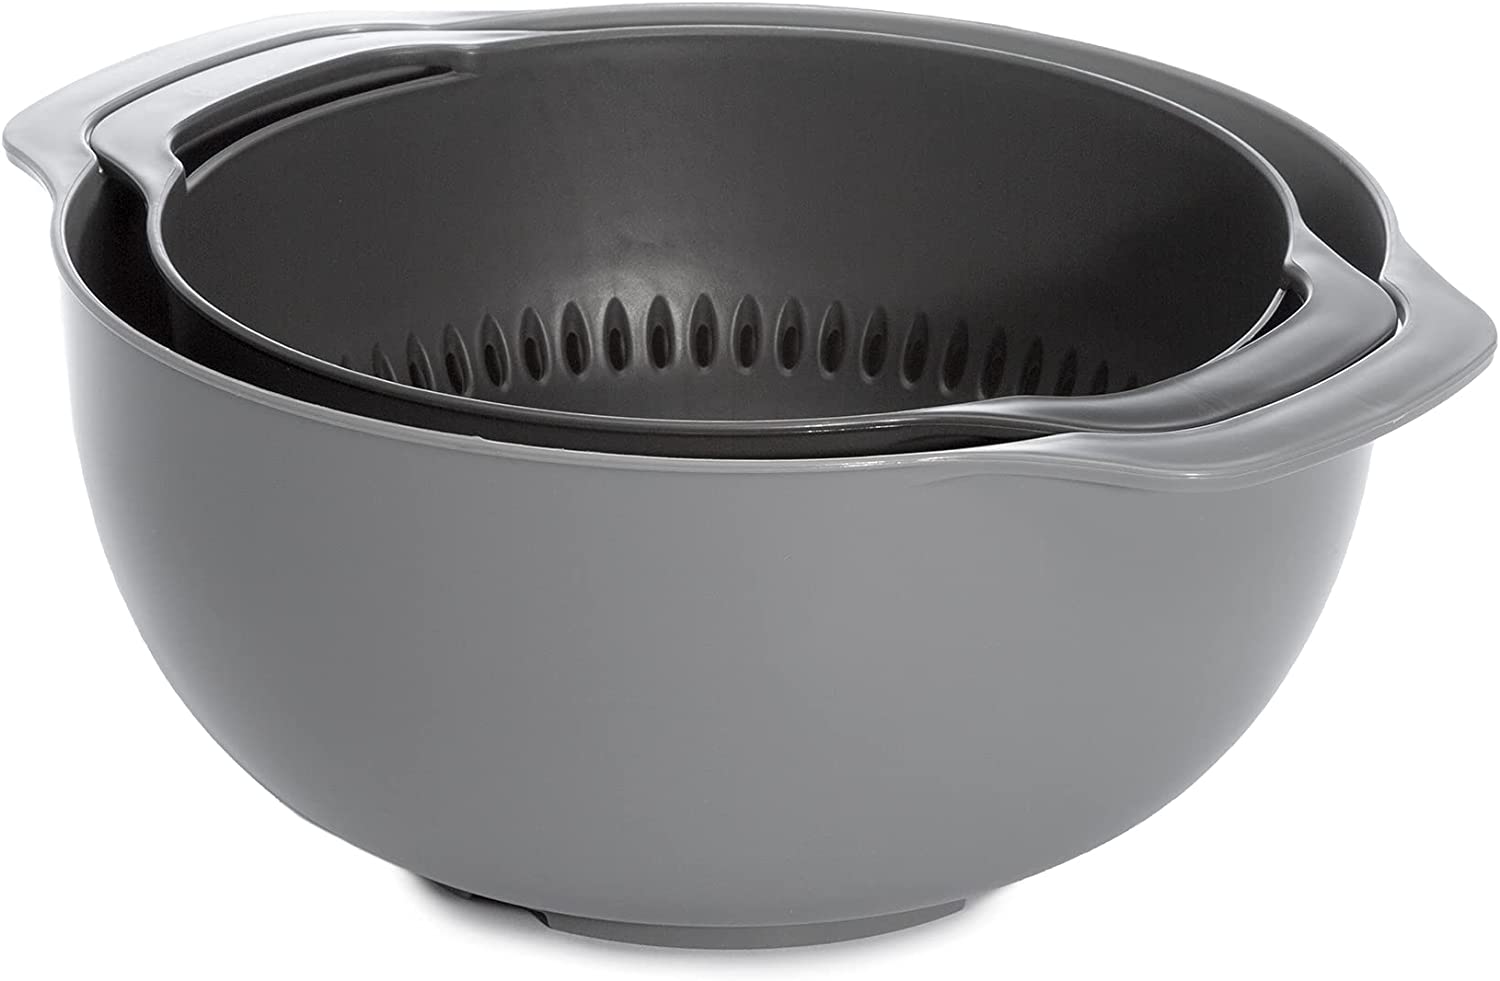 Goodful 2-in-1 Colander and Bowl Set, Food Safe, Dishwasher Safe, Strainer Use for Pasta, Fruits, Vegetables, and More